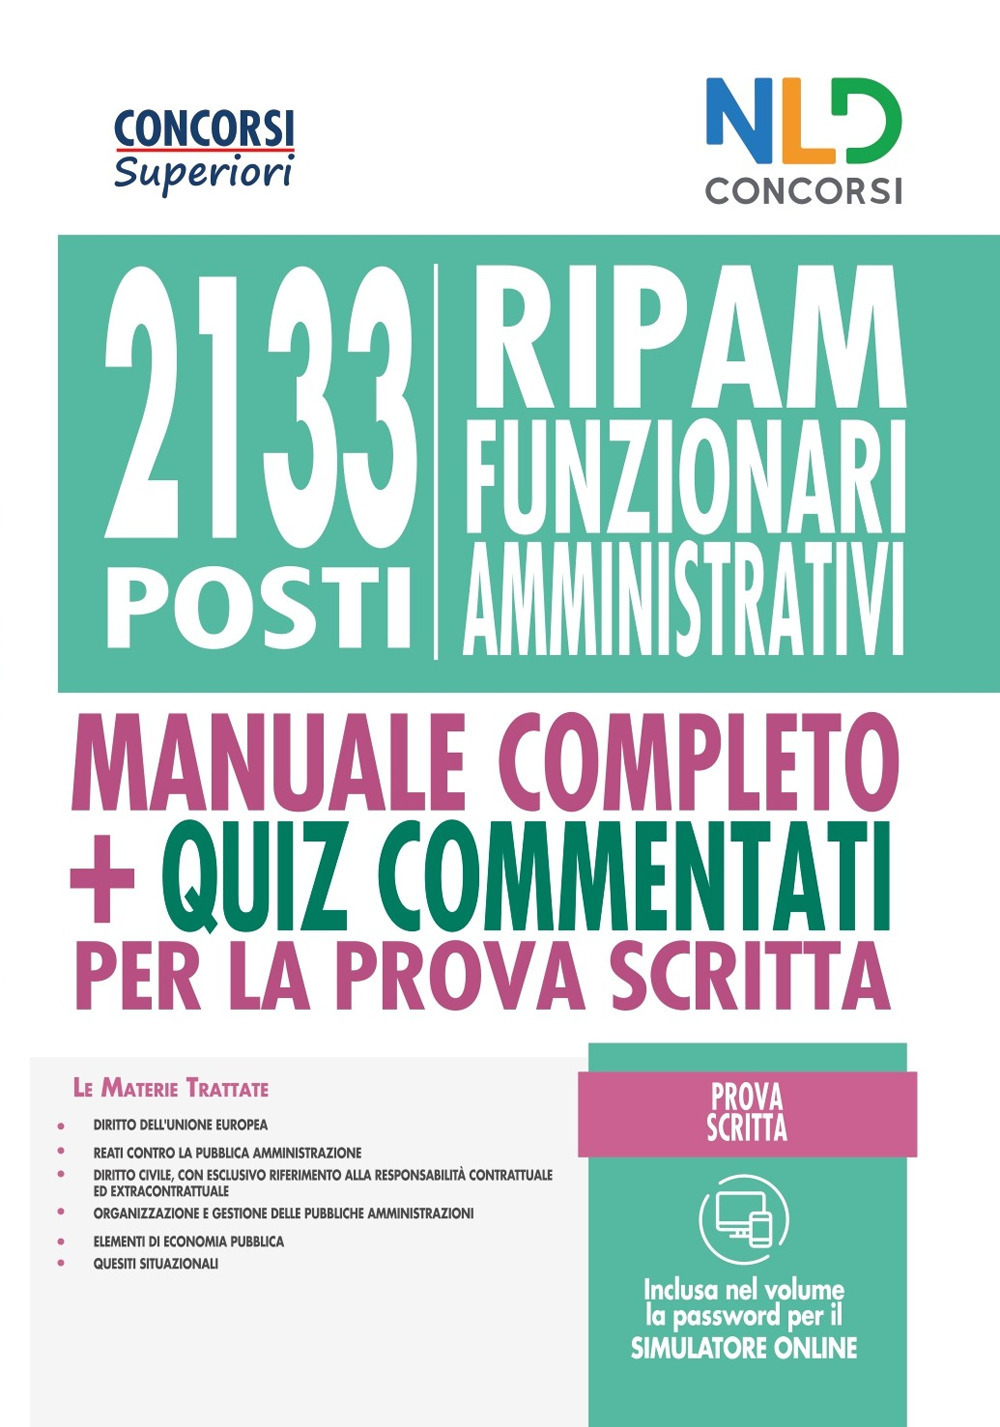 Concorso 2133 funzionari amministrativi RIPAM: Manuale + quiz per la prova preselettiva. Nuova ediz.